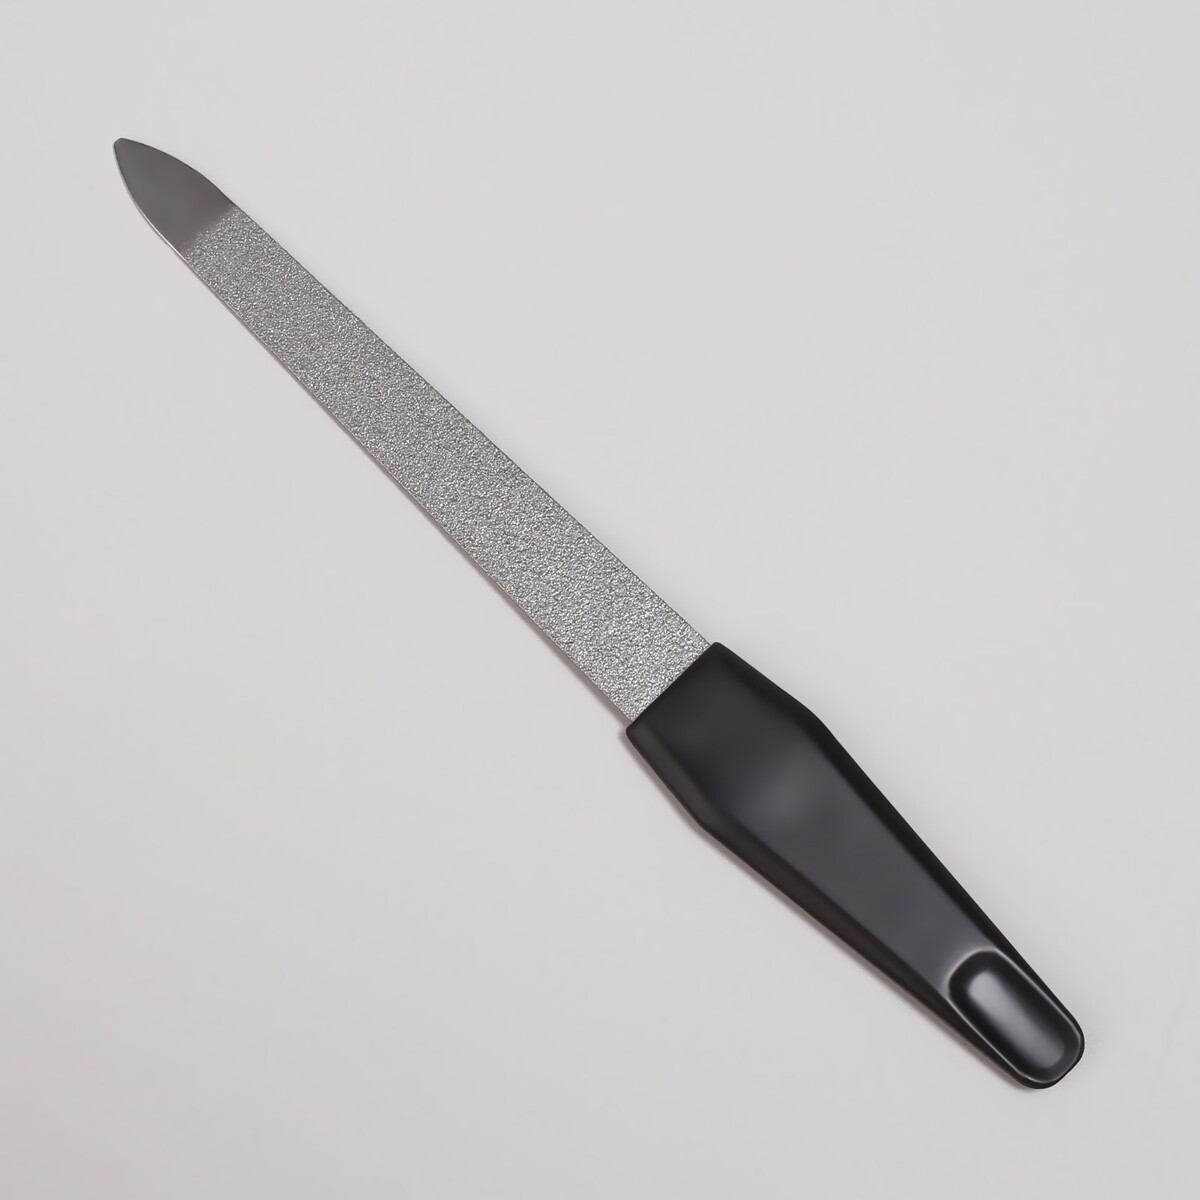 Пилка металлическая для ногтей, 12 см, на блистере, цвет серебристый/черный пилка металлическая для ногтей прорезиненная ручка 17 см серебристый